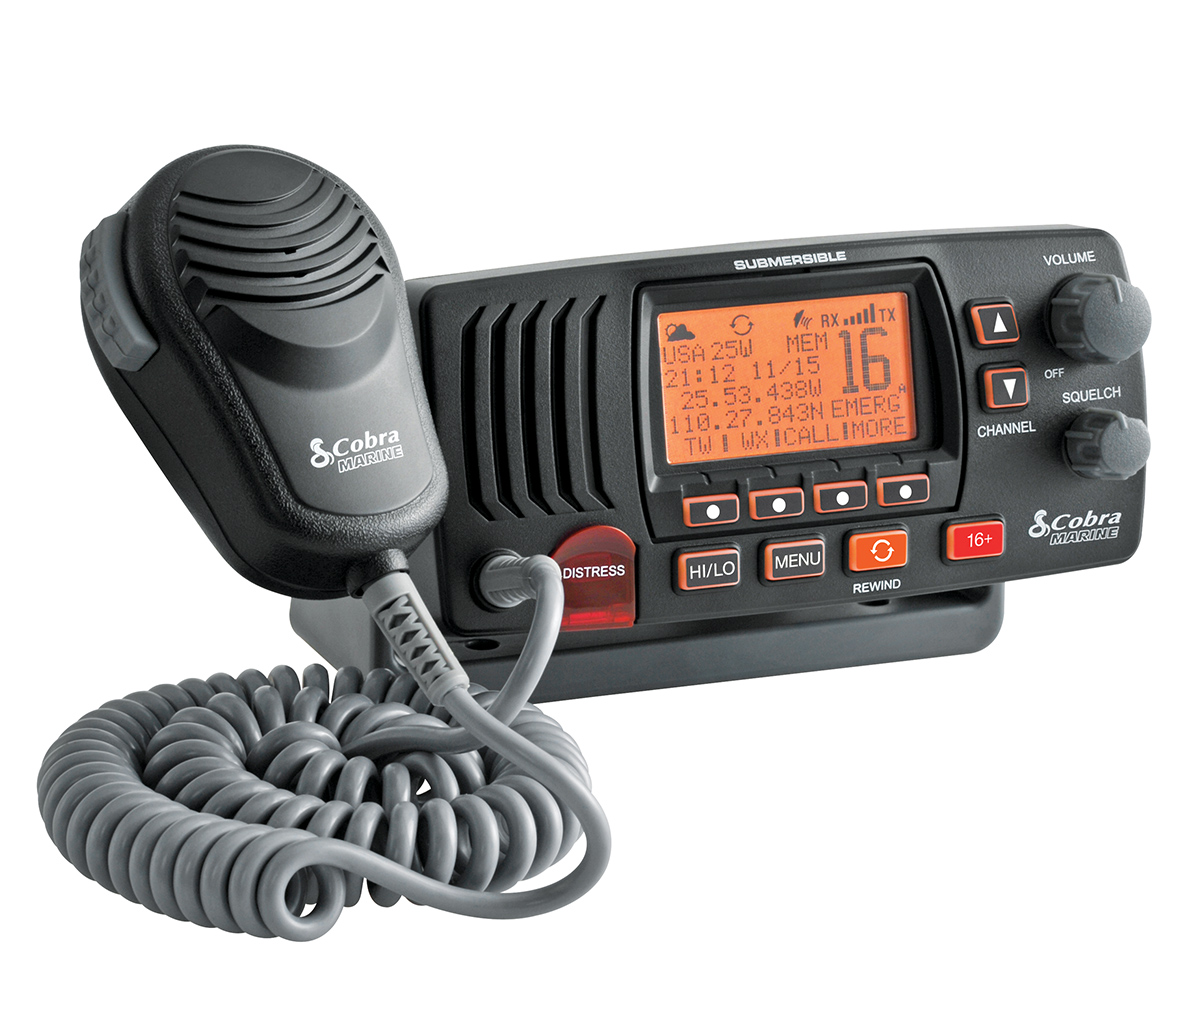 VHF radio